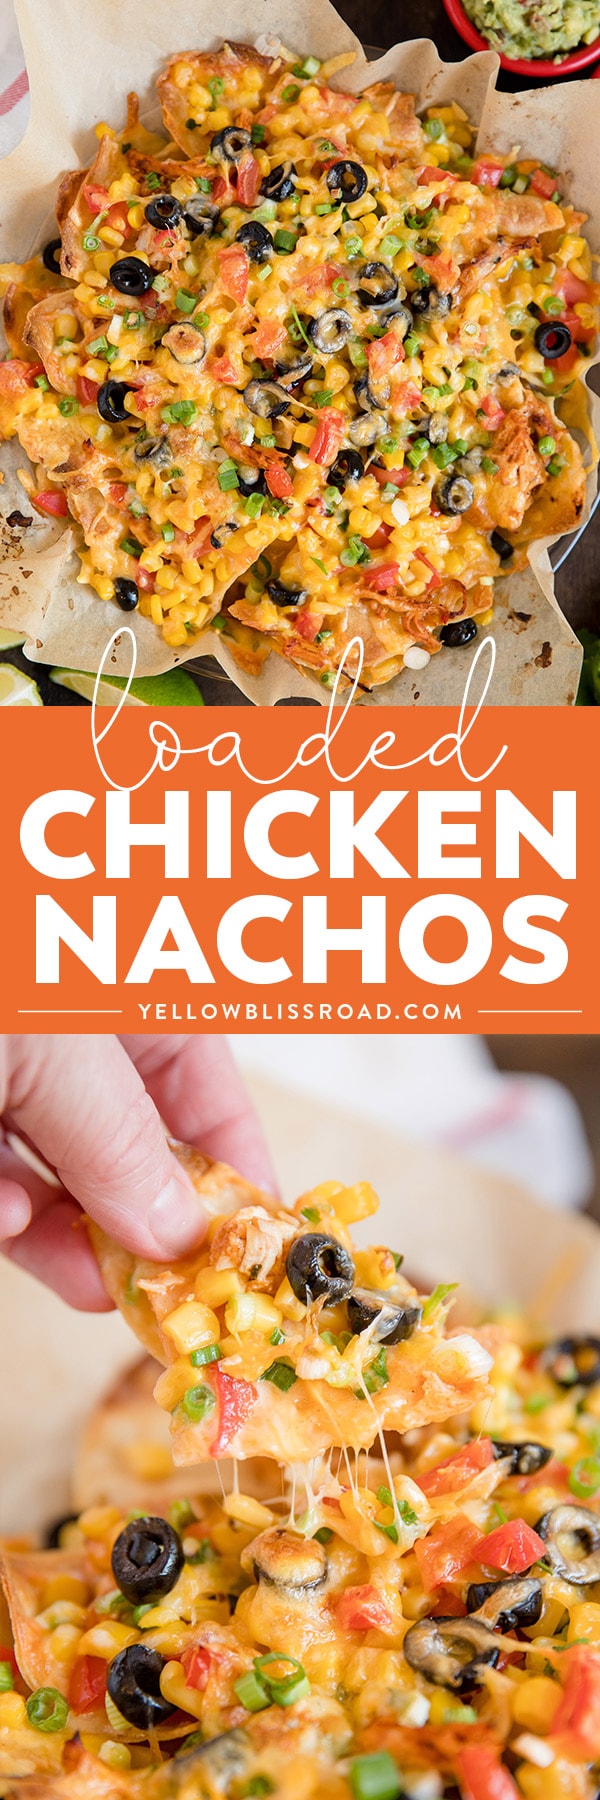 Loaded Chicken Nachos Recipe - Mexican Chicken, Cheese & Veggies!